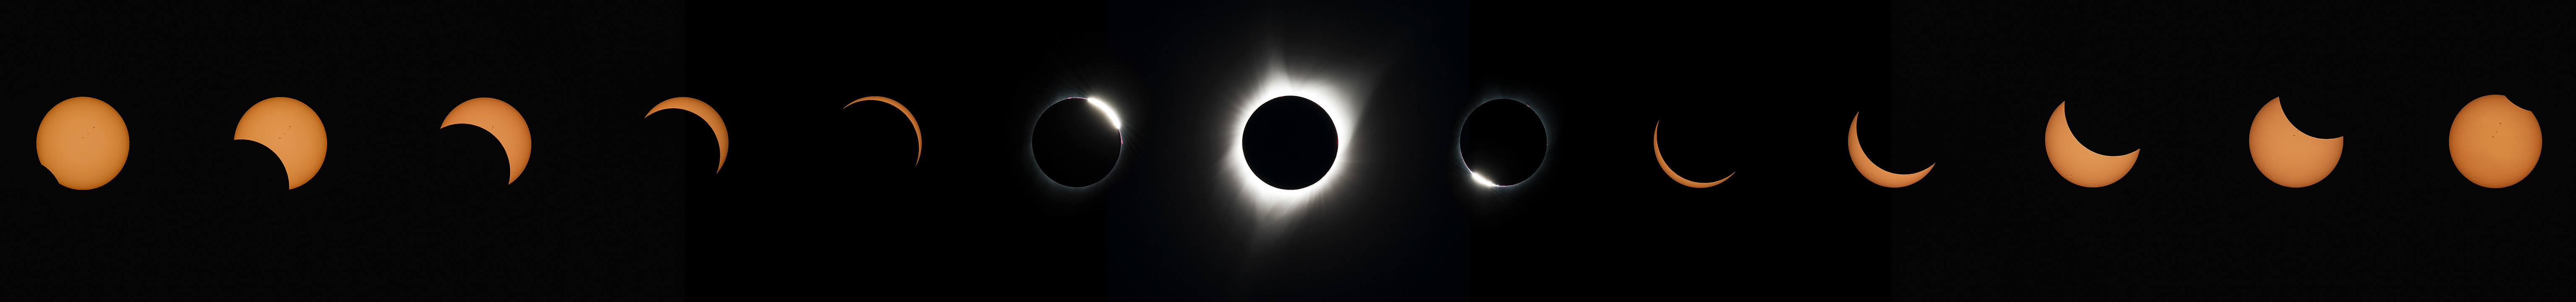 How a solar eclipse progresses